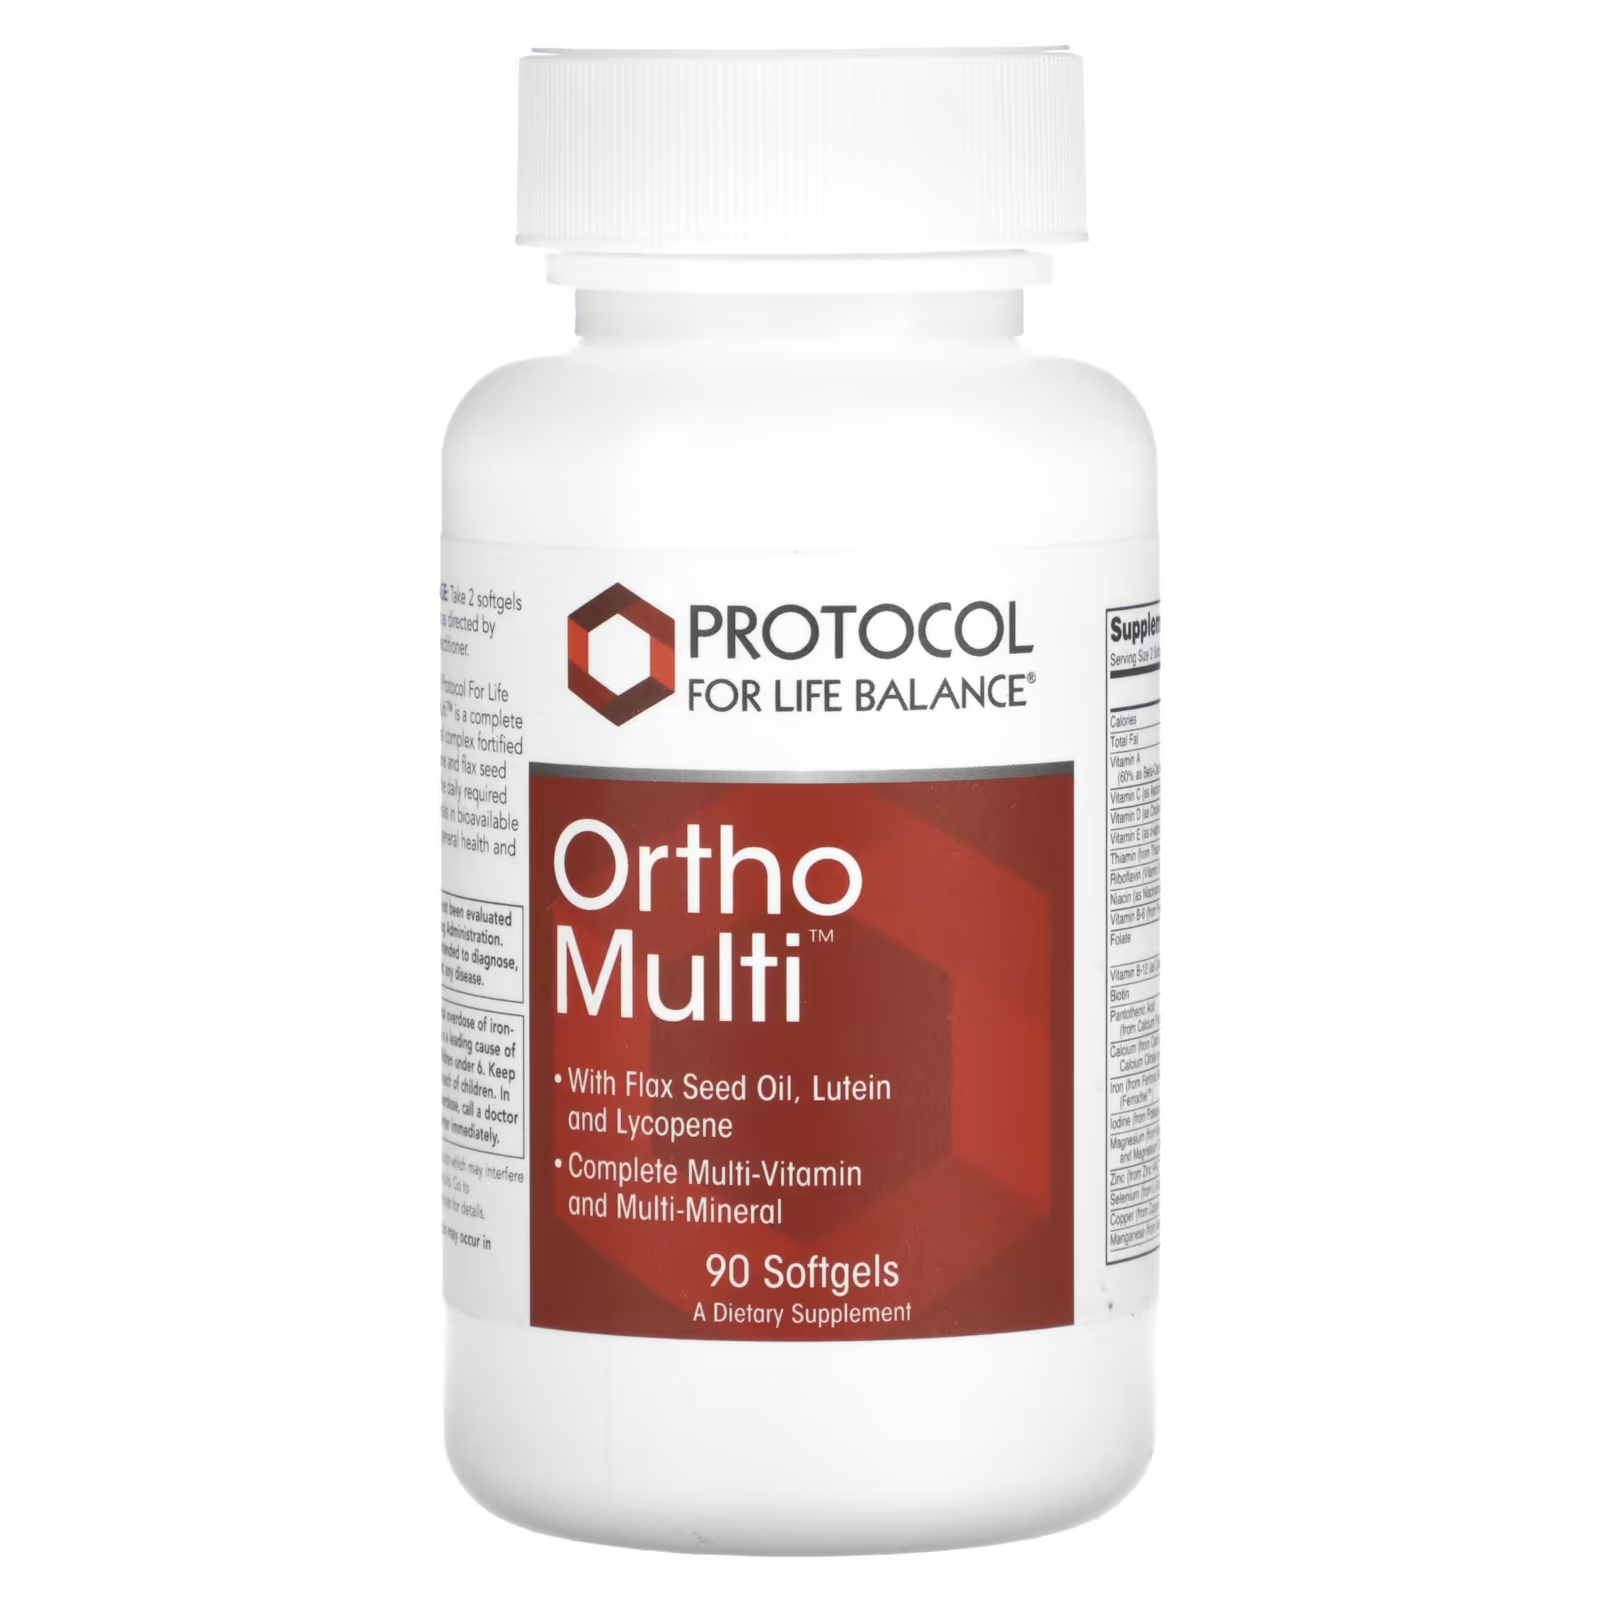 Пищевая добавка Ortho Multi Protocol for Life Balance, 90 капсул protocol for life balance витамины d3 и k2 липосомный спрей 59 мл